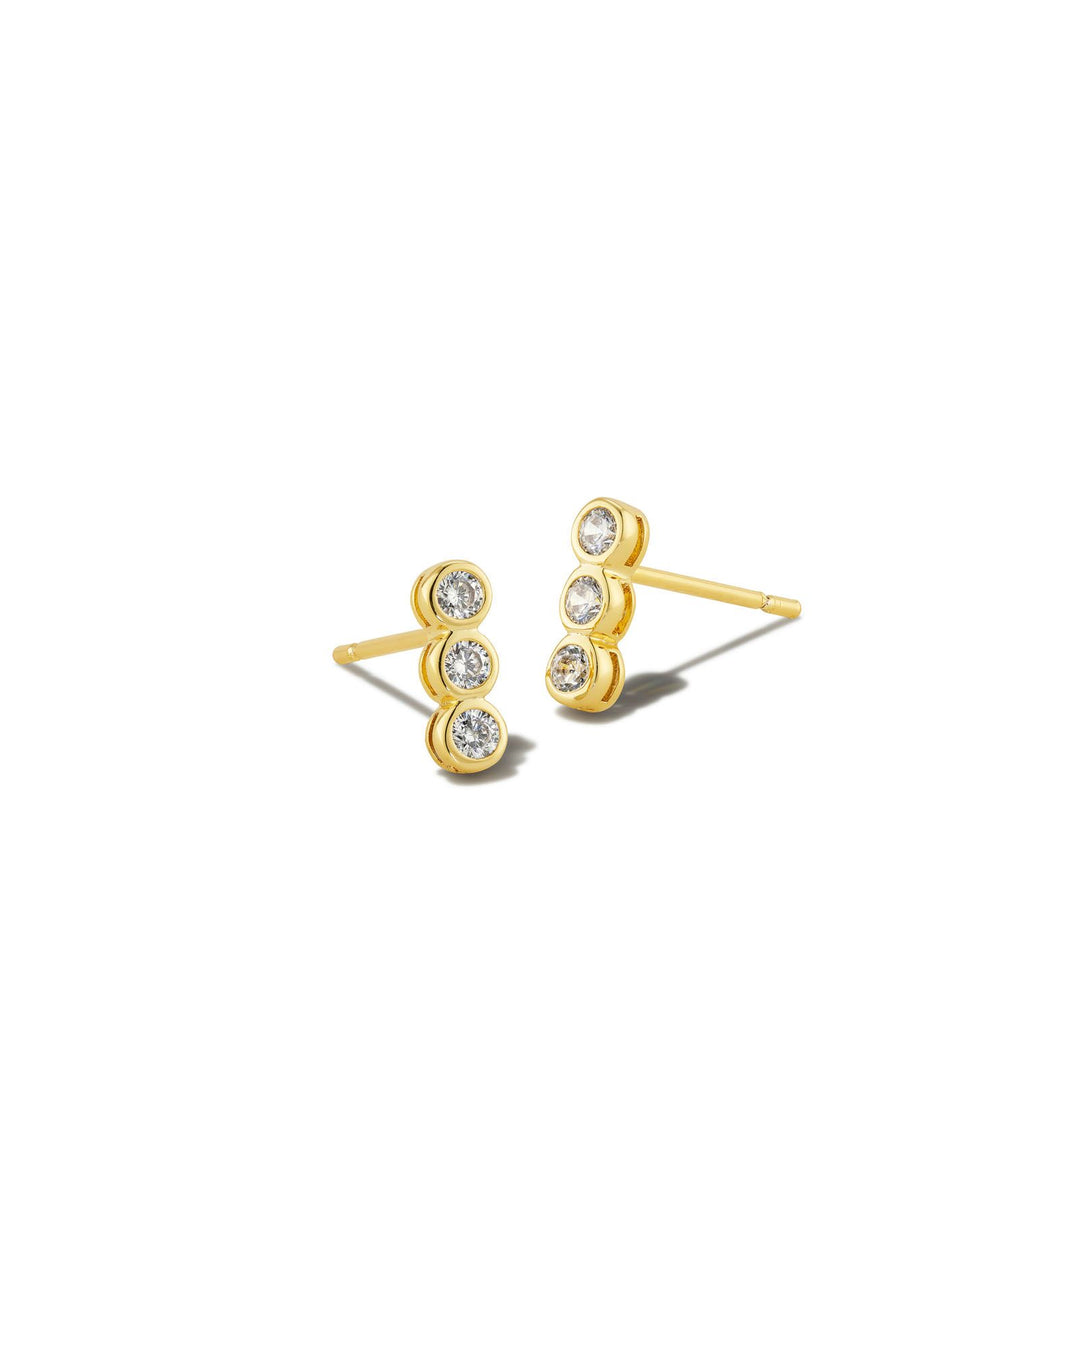 Kendra Scott Carmen Stud Earrings in Gold